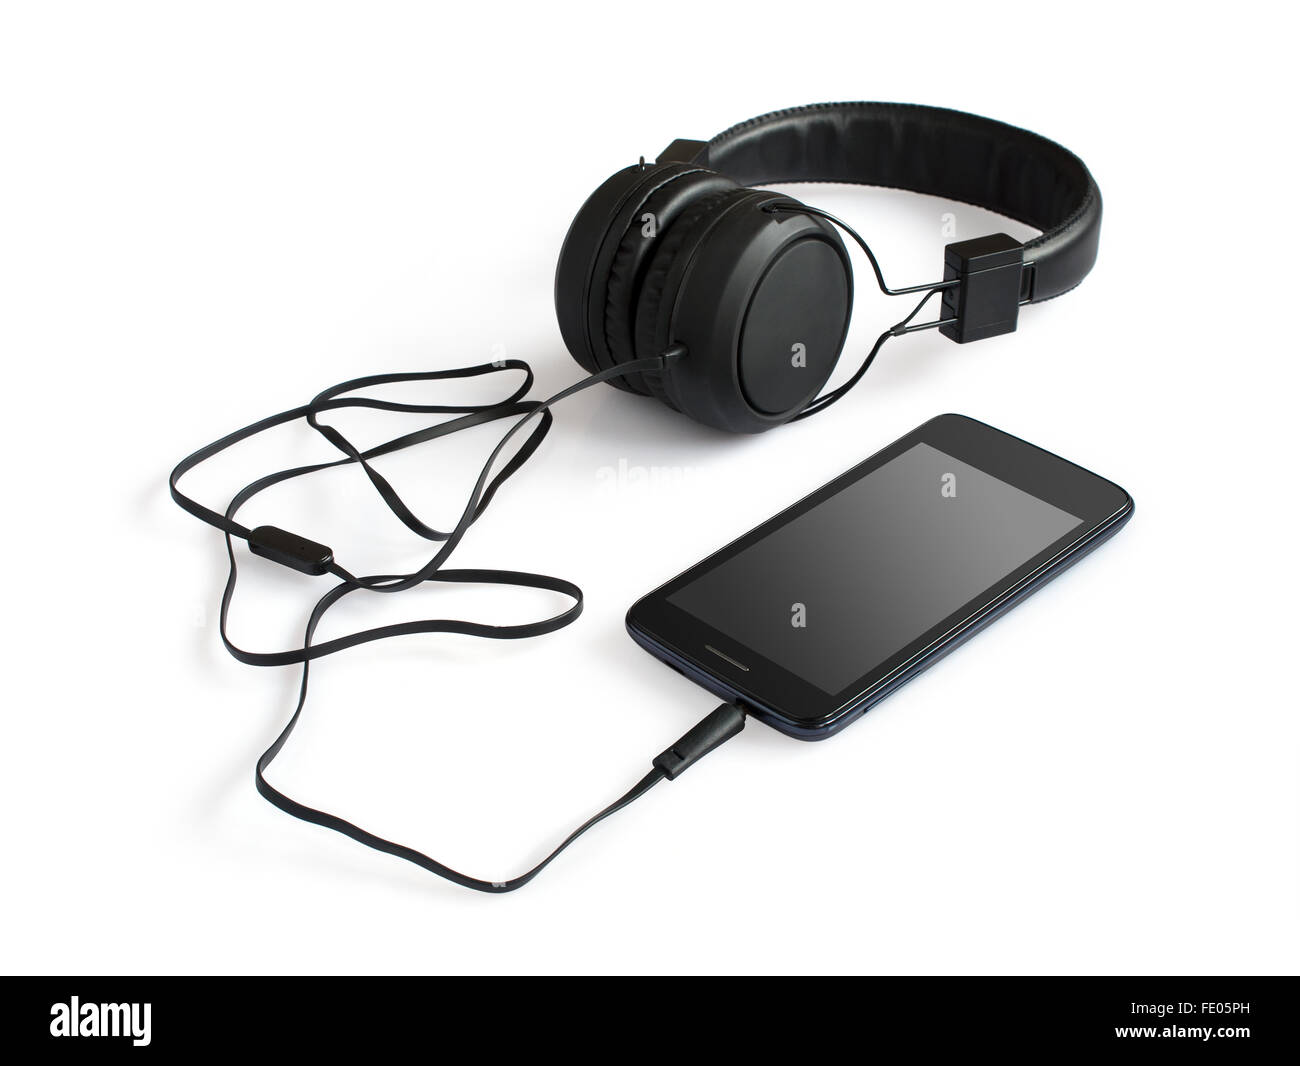 Nero smartphone e cuffie isolato su sfondo bianco Foto Stock